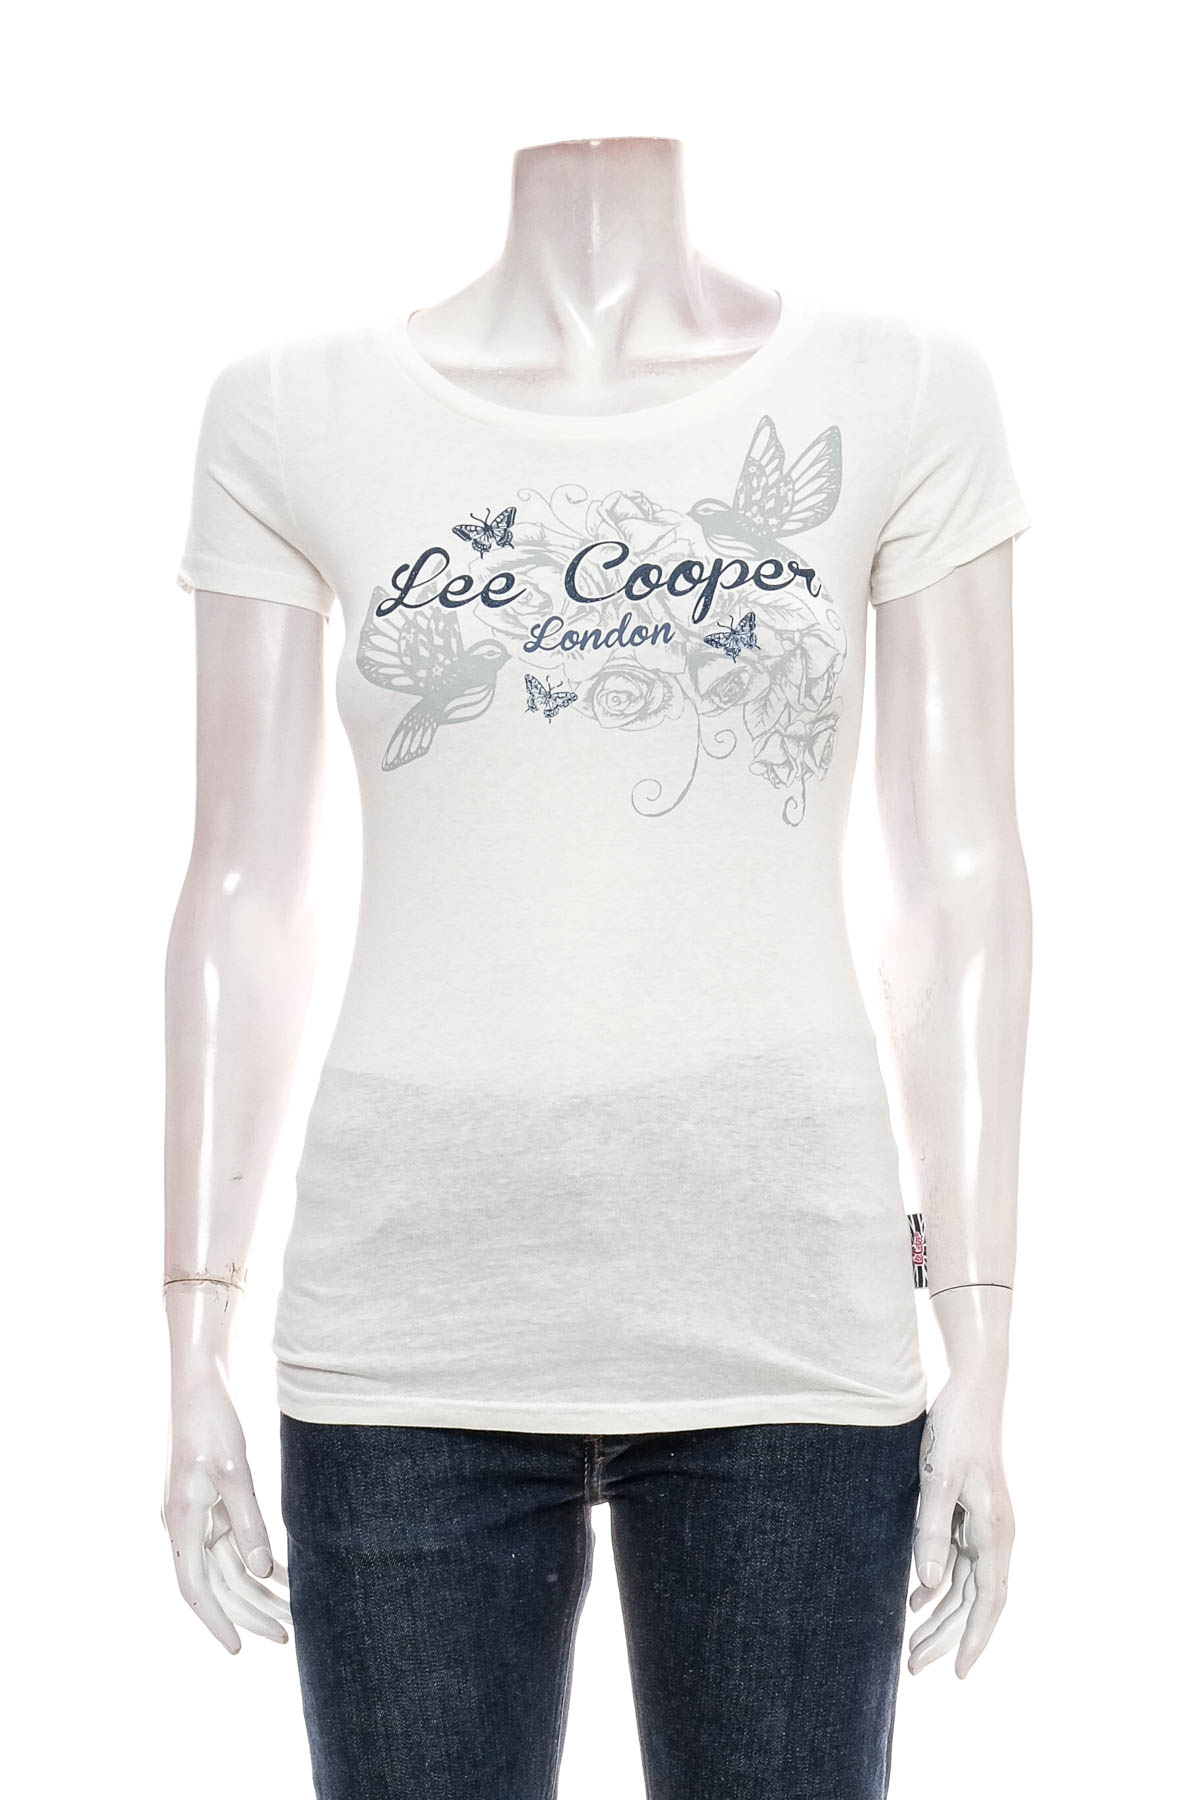 Koszulka damska - Lee Cooper - 0